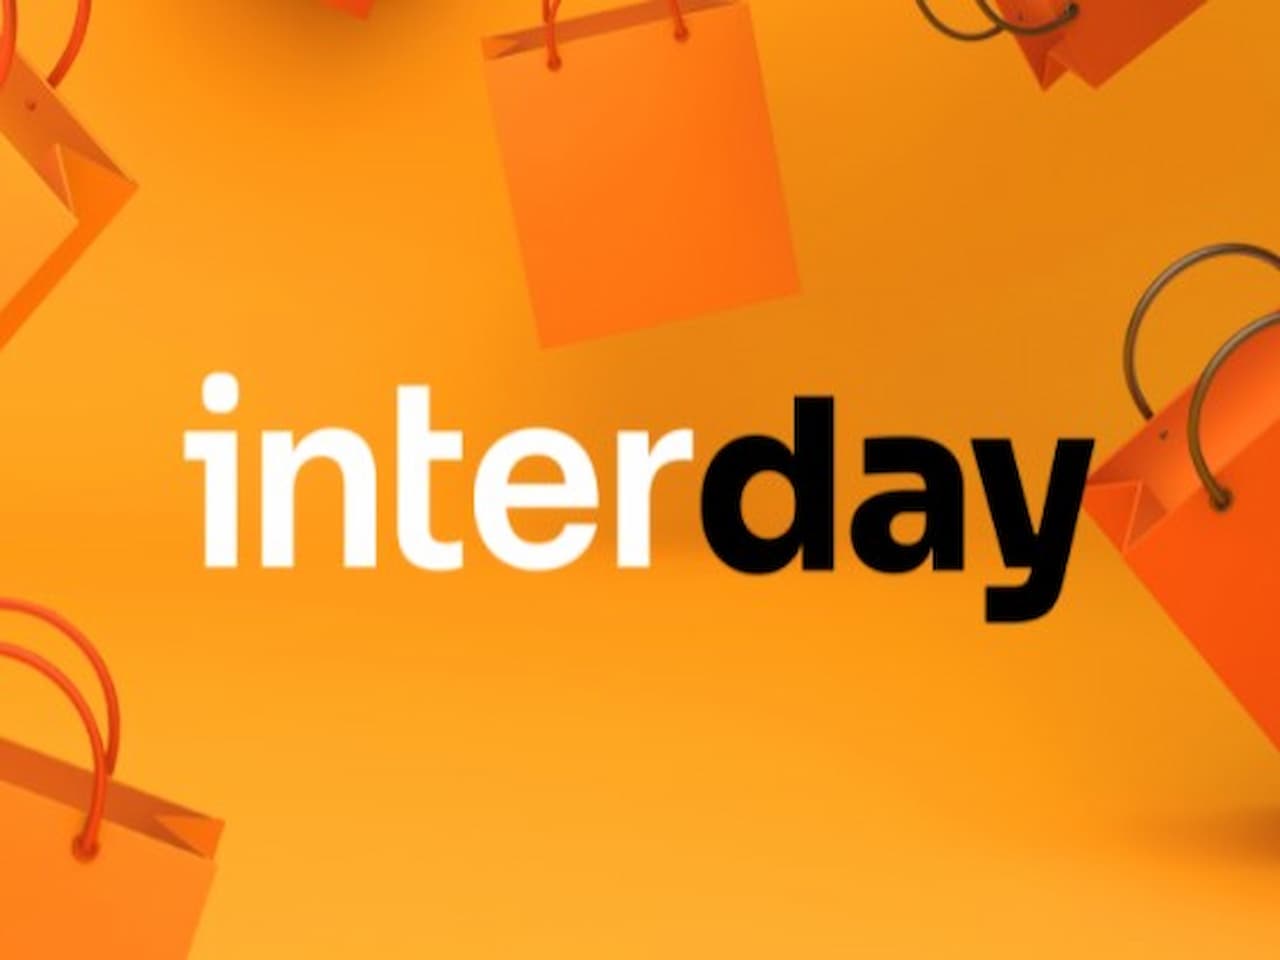 logo do Inter Day 2021 representando Inter Day 2021